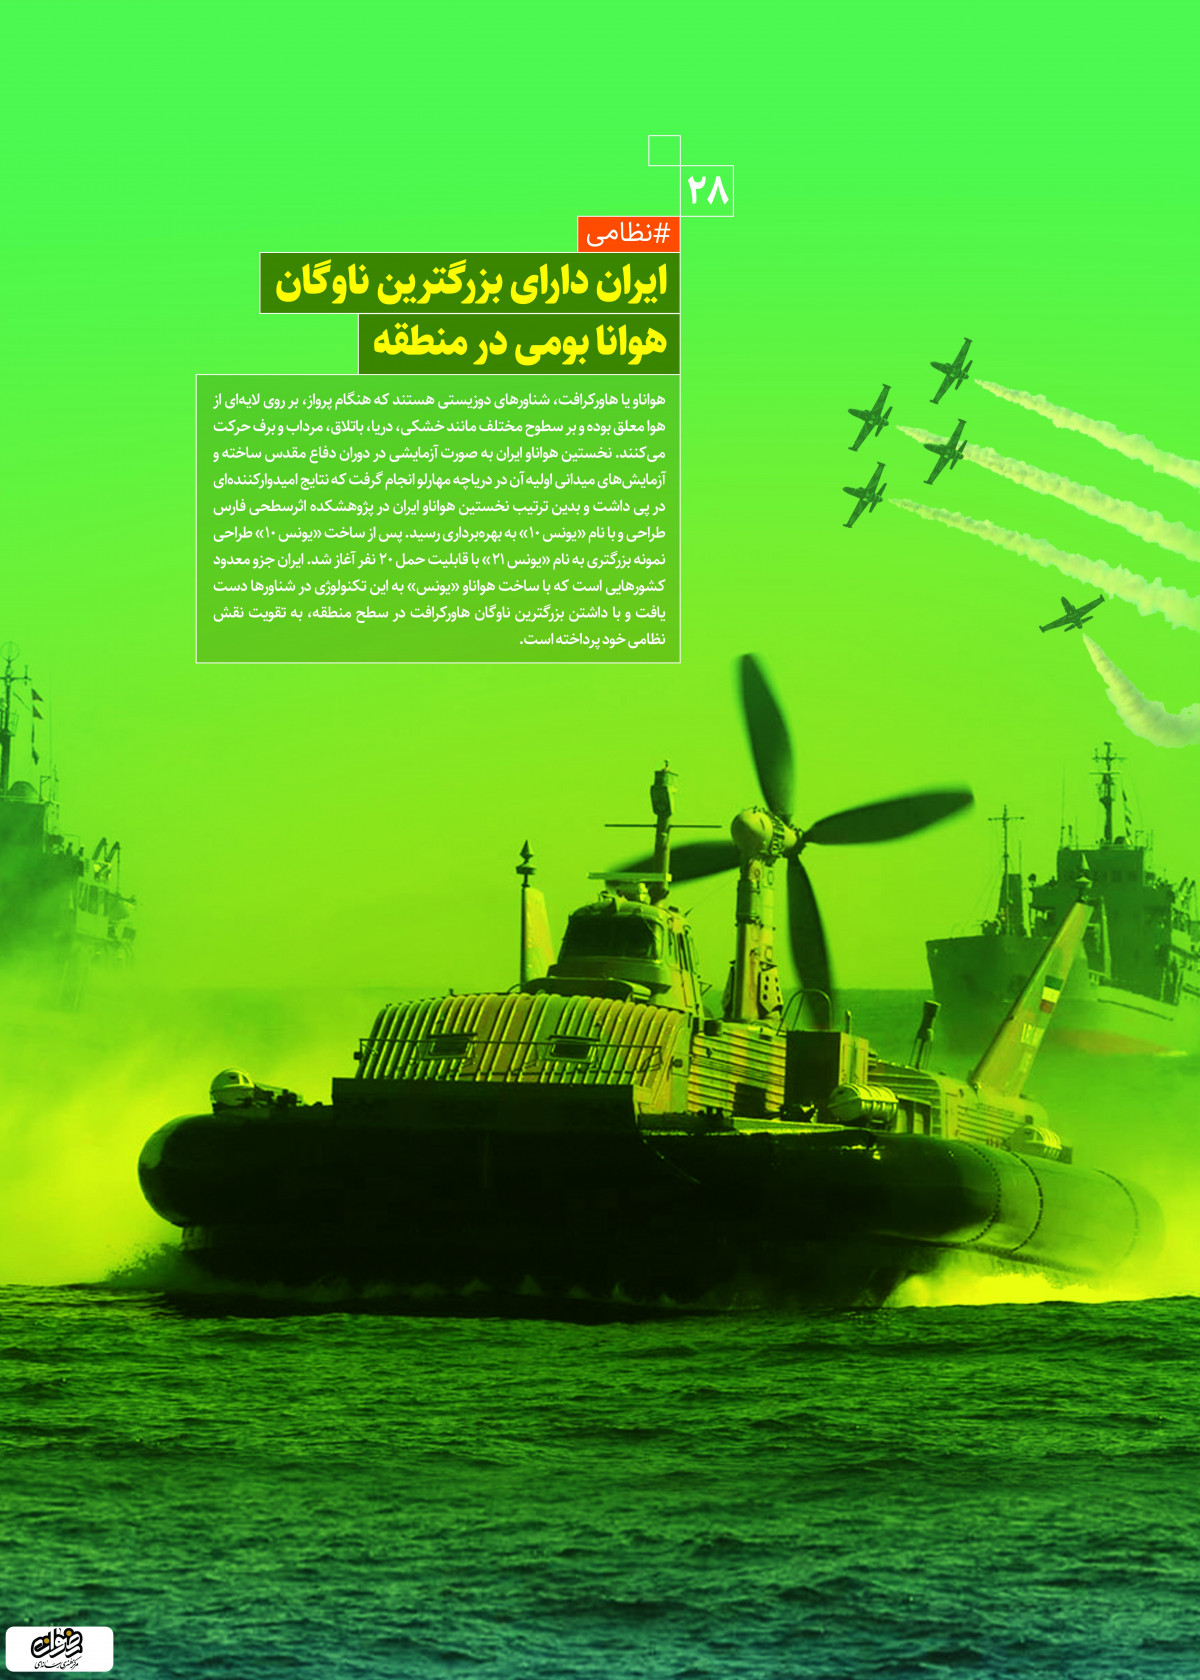 پوستر: دستاوردهای انقلاب اسلامی ایران دارای بزرگترین ناوگان هوانای بومی در منطقه